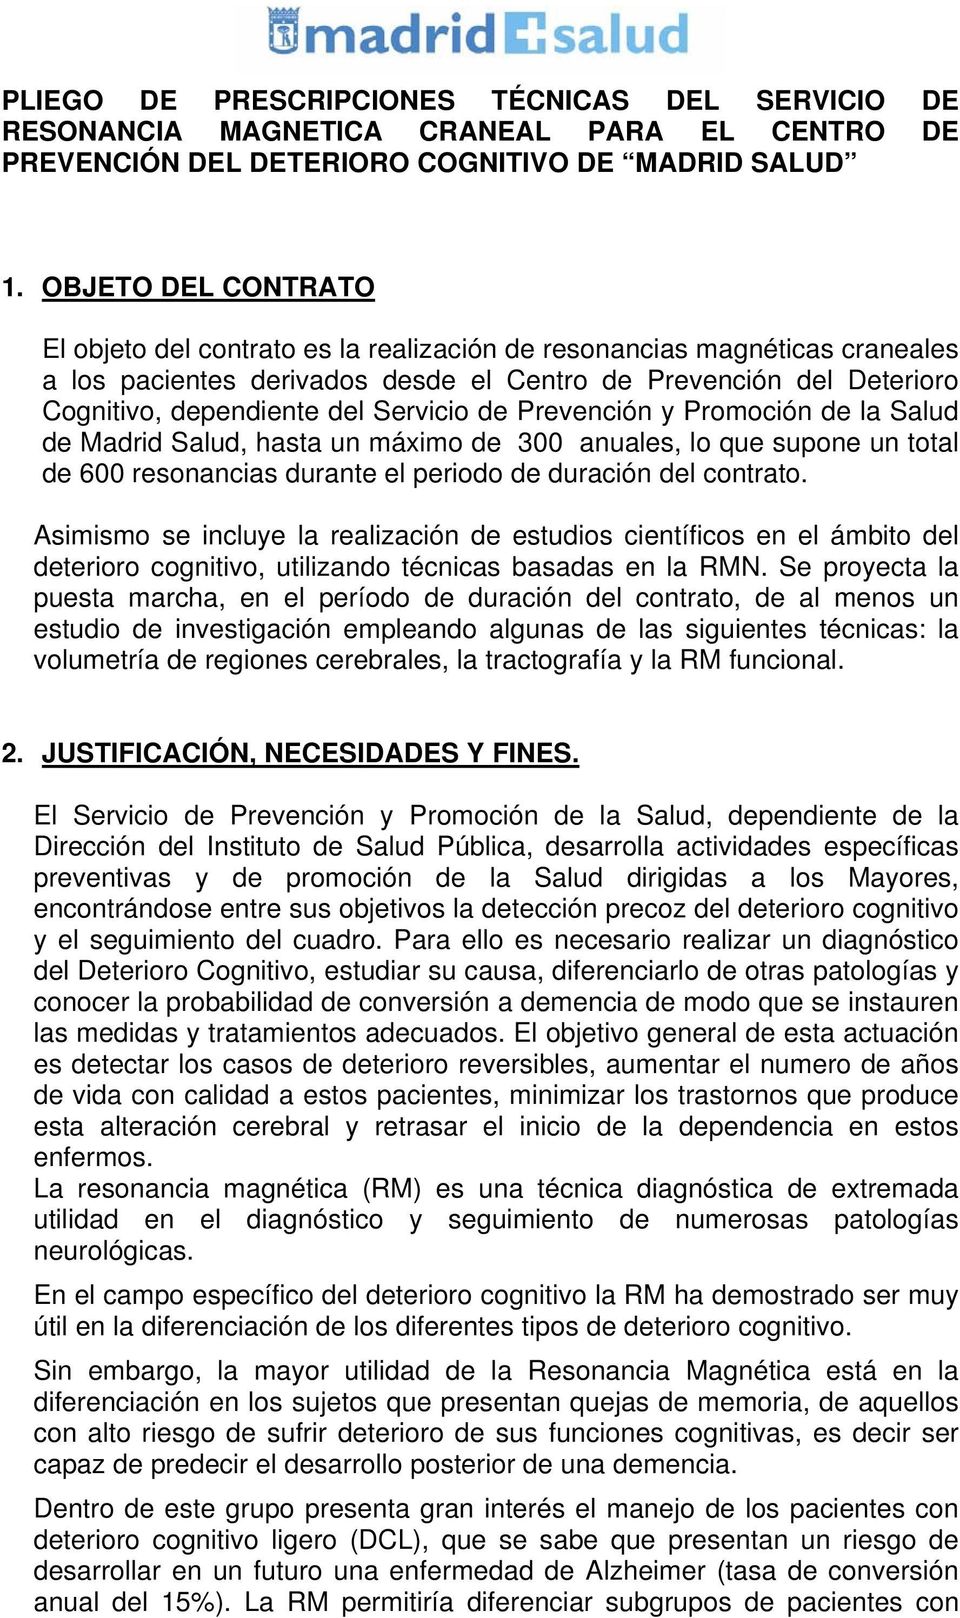 Servicio de Prevención y Promoción de la Salud de Madrid Salud, hasta un máximo de 300 anuales, lo que supone un total de 600 resonancias durante el periodo de duración del contrato.